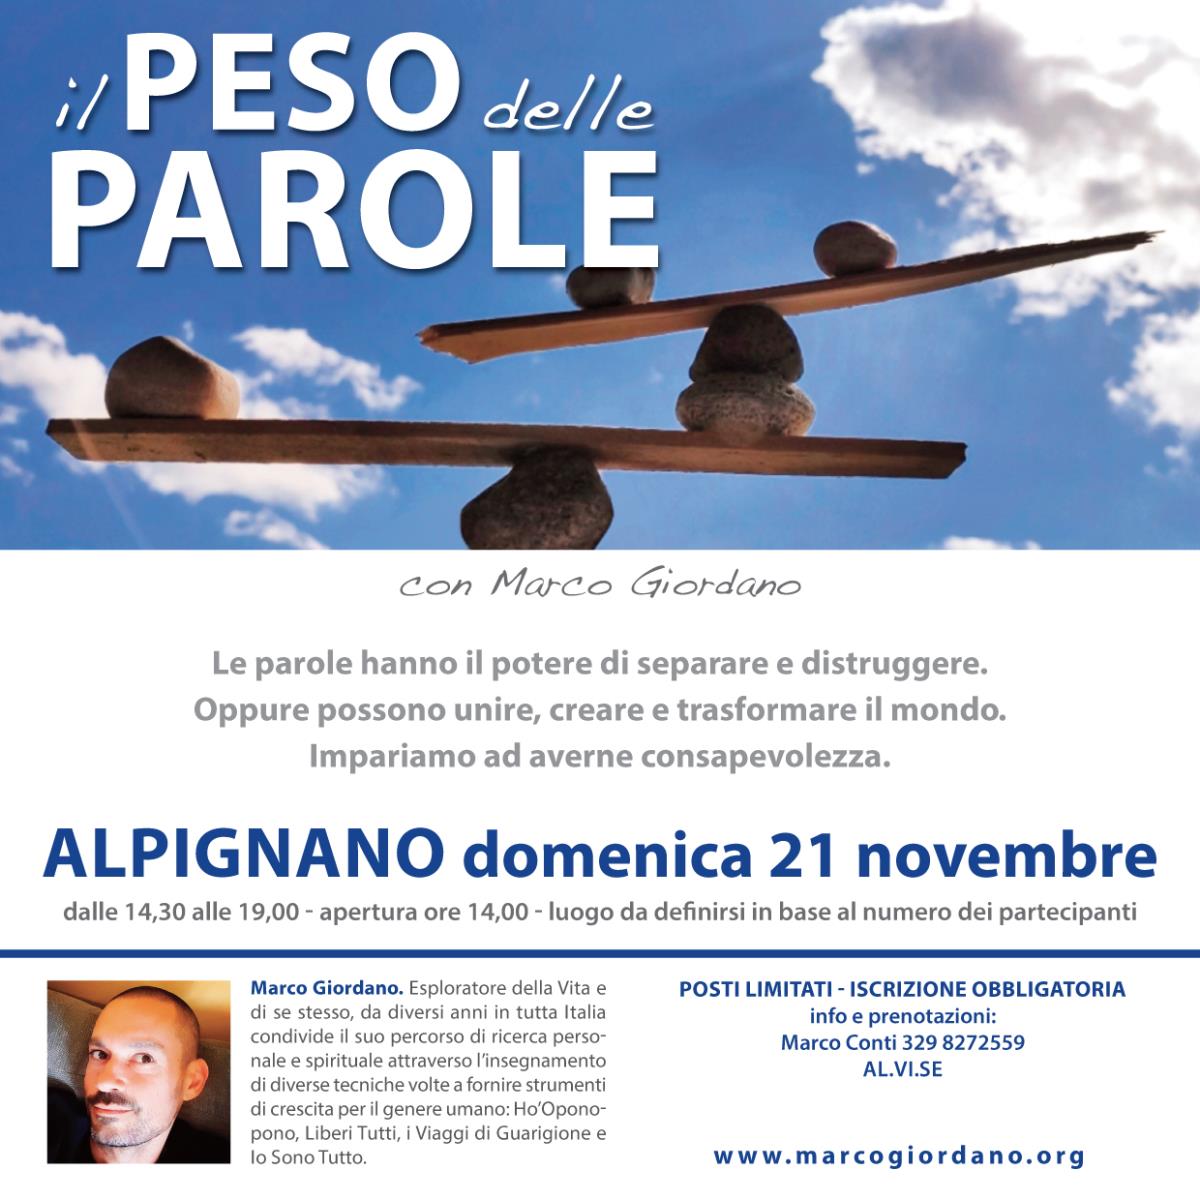 <b>IL PESO DELLE PAROLE</b> domenica 21 novembre <b>ALPIGNANO (Torino)